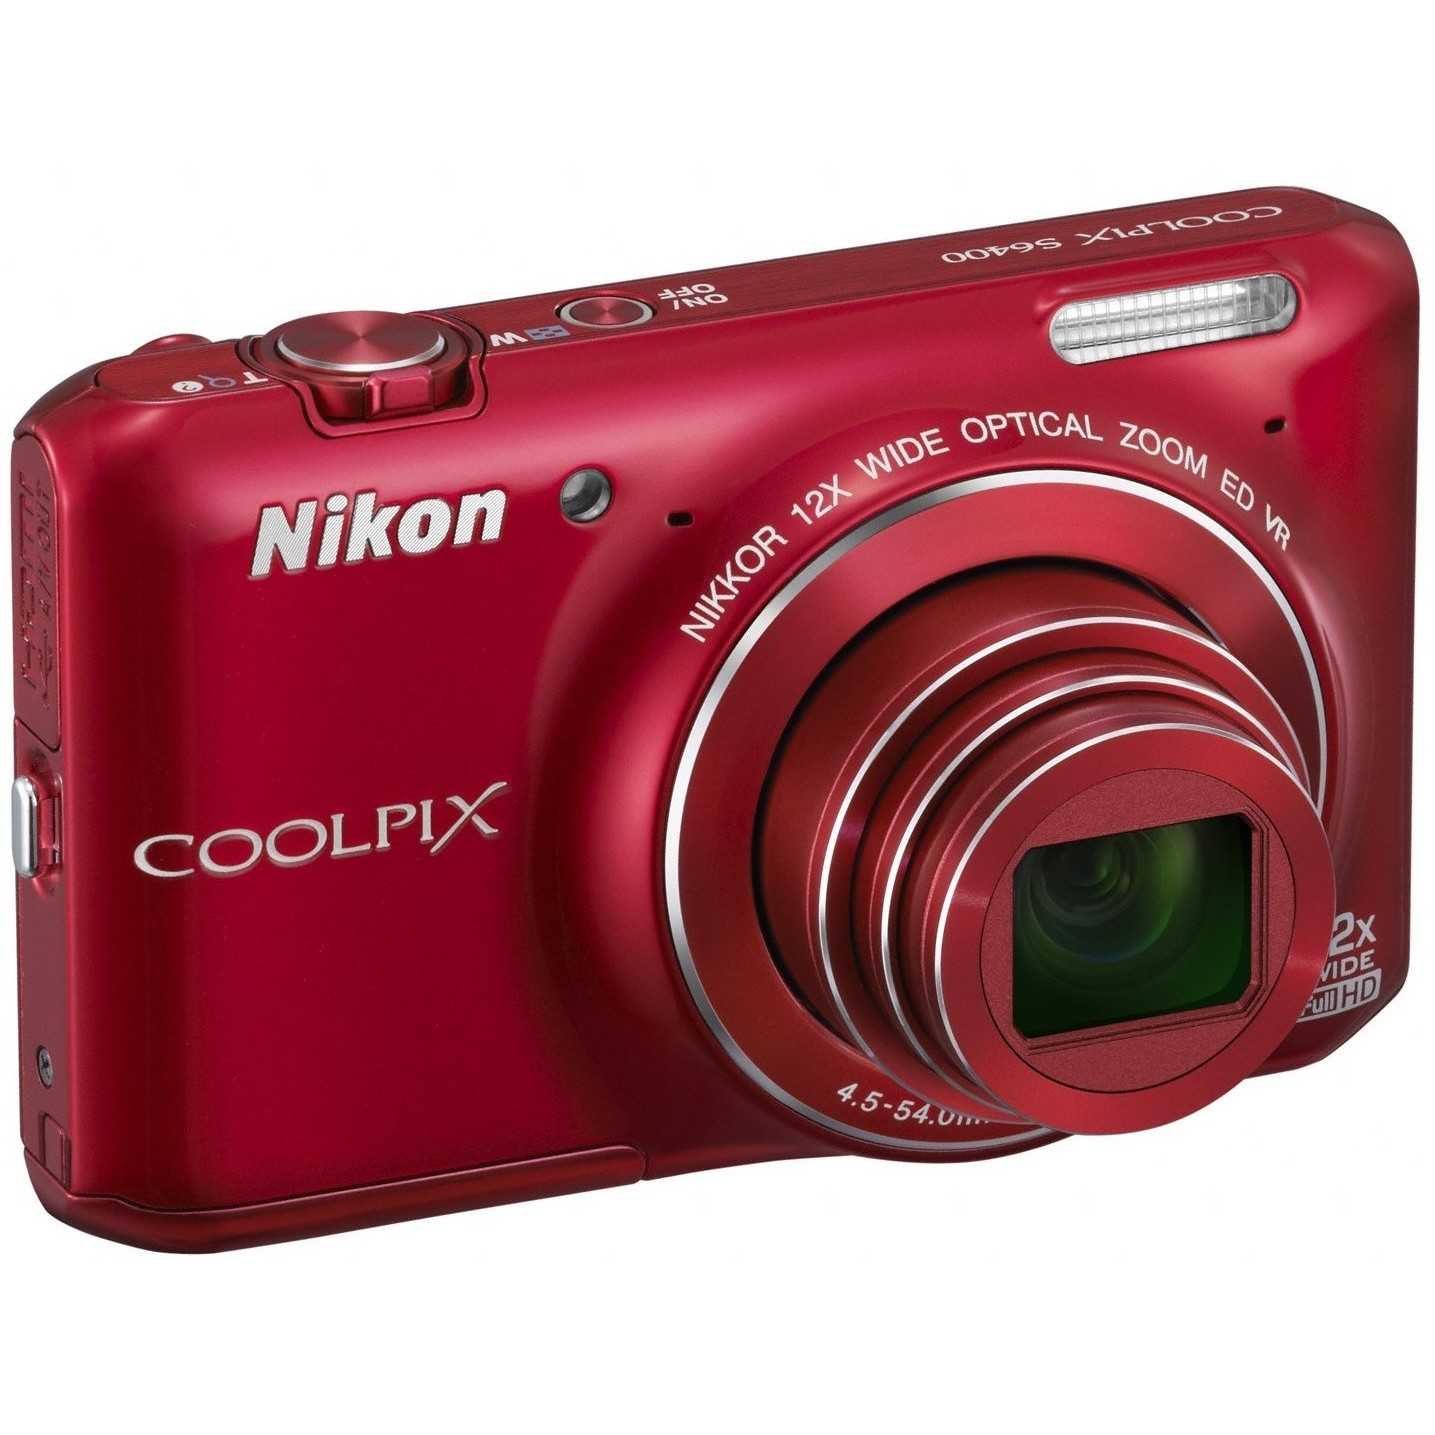 Цифровой фотоаппарат Nikon Coolpix S02 - подробные характеристики обзоры видео фото Цены в интернет-магазинах где можно купить цифровую фотоаппарат Nikon Coolpix S02